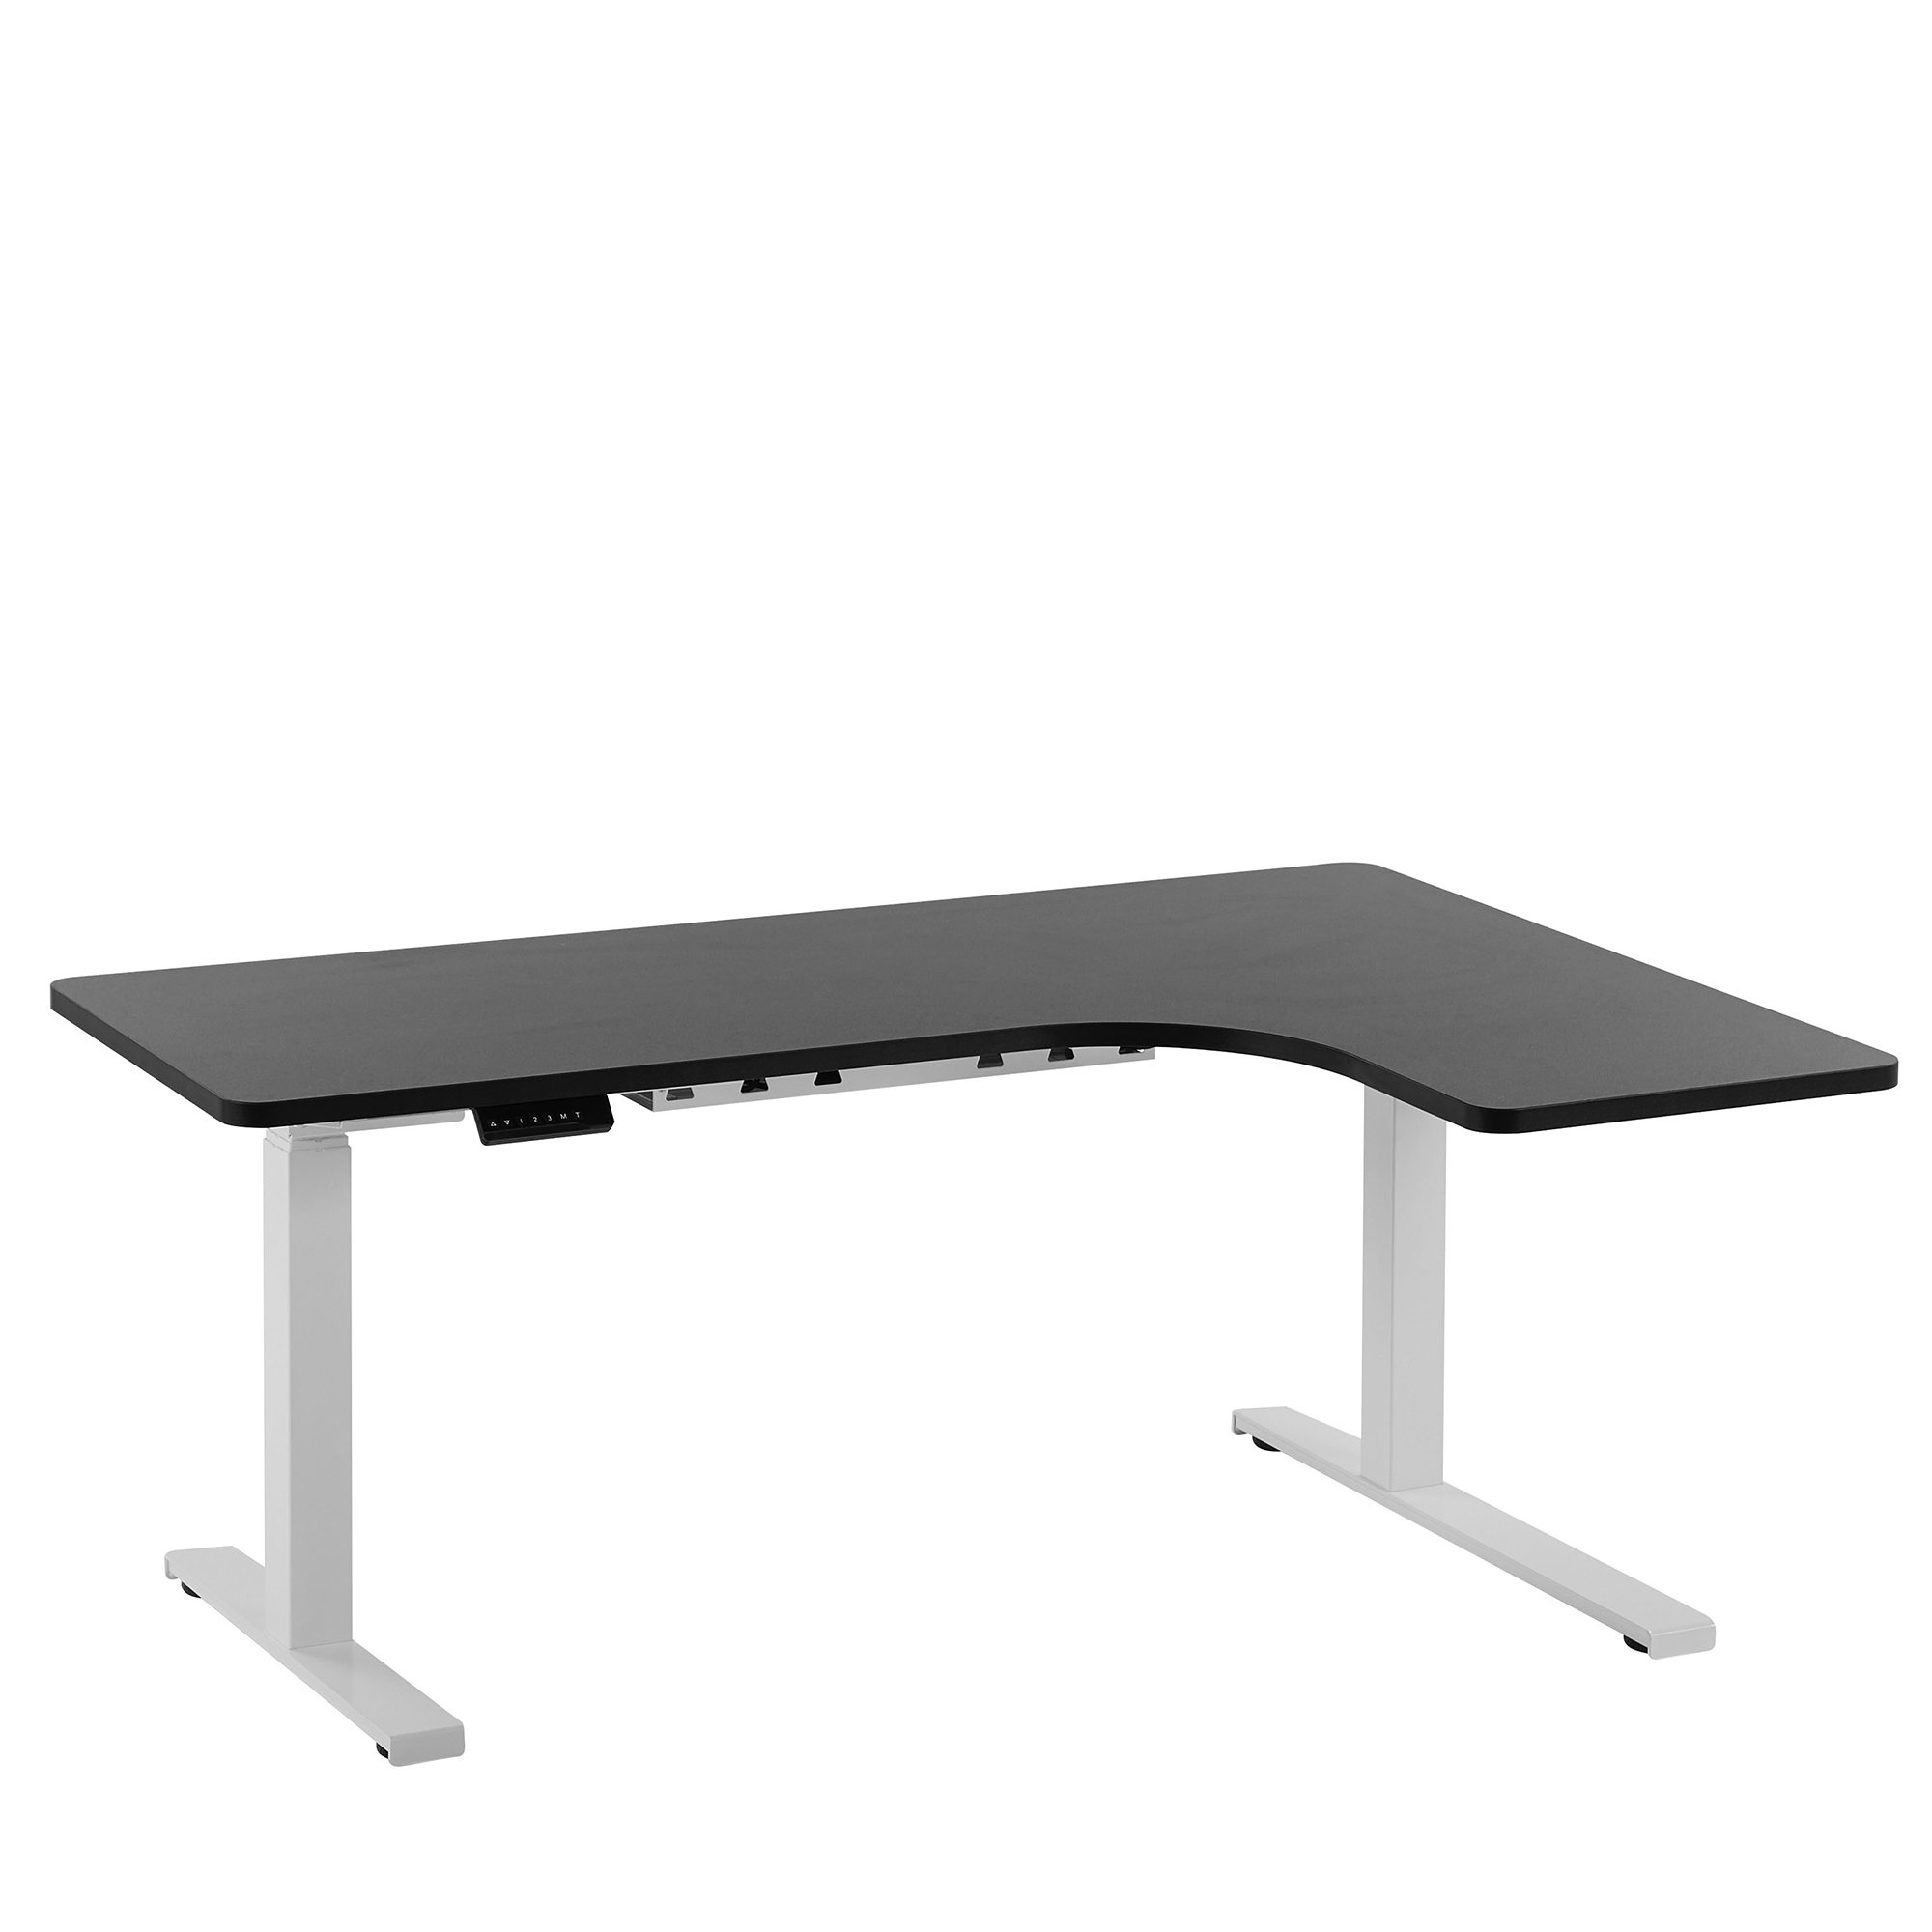 Supporto scrivania regolabile in altezza ad angolo - Altezza: 60-125 cm -  Larghezza 110-190 cm (sinistra) / 90-150 cm (destra) - Angolo: 90° - 150 kg